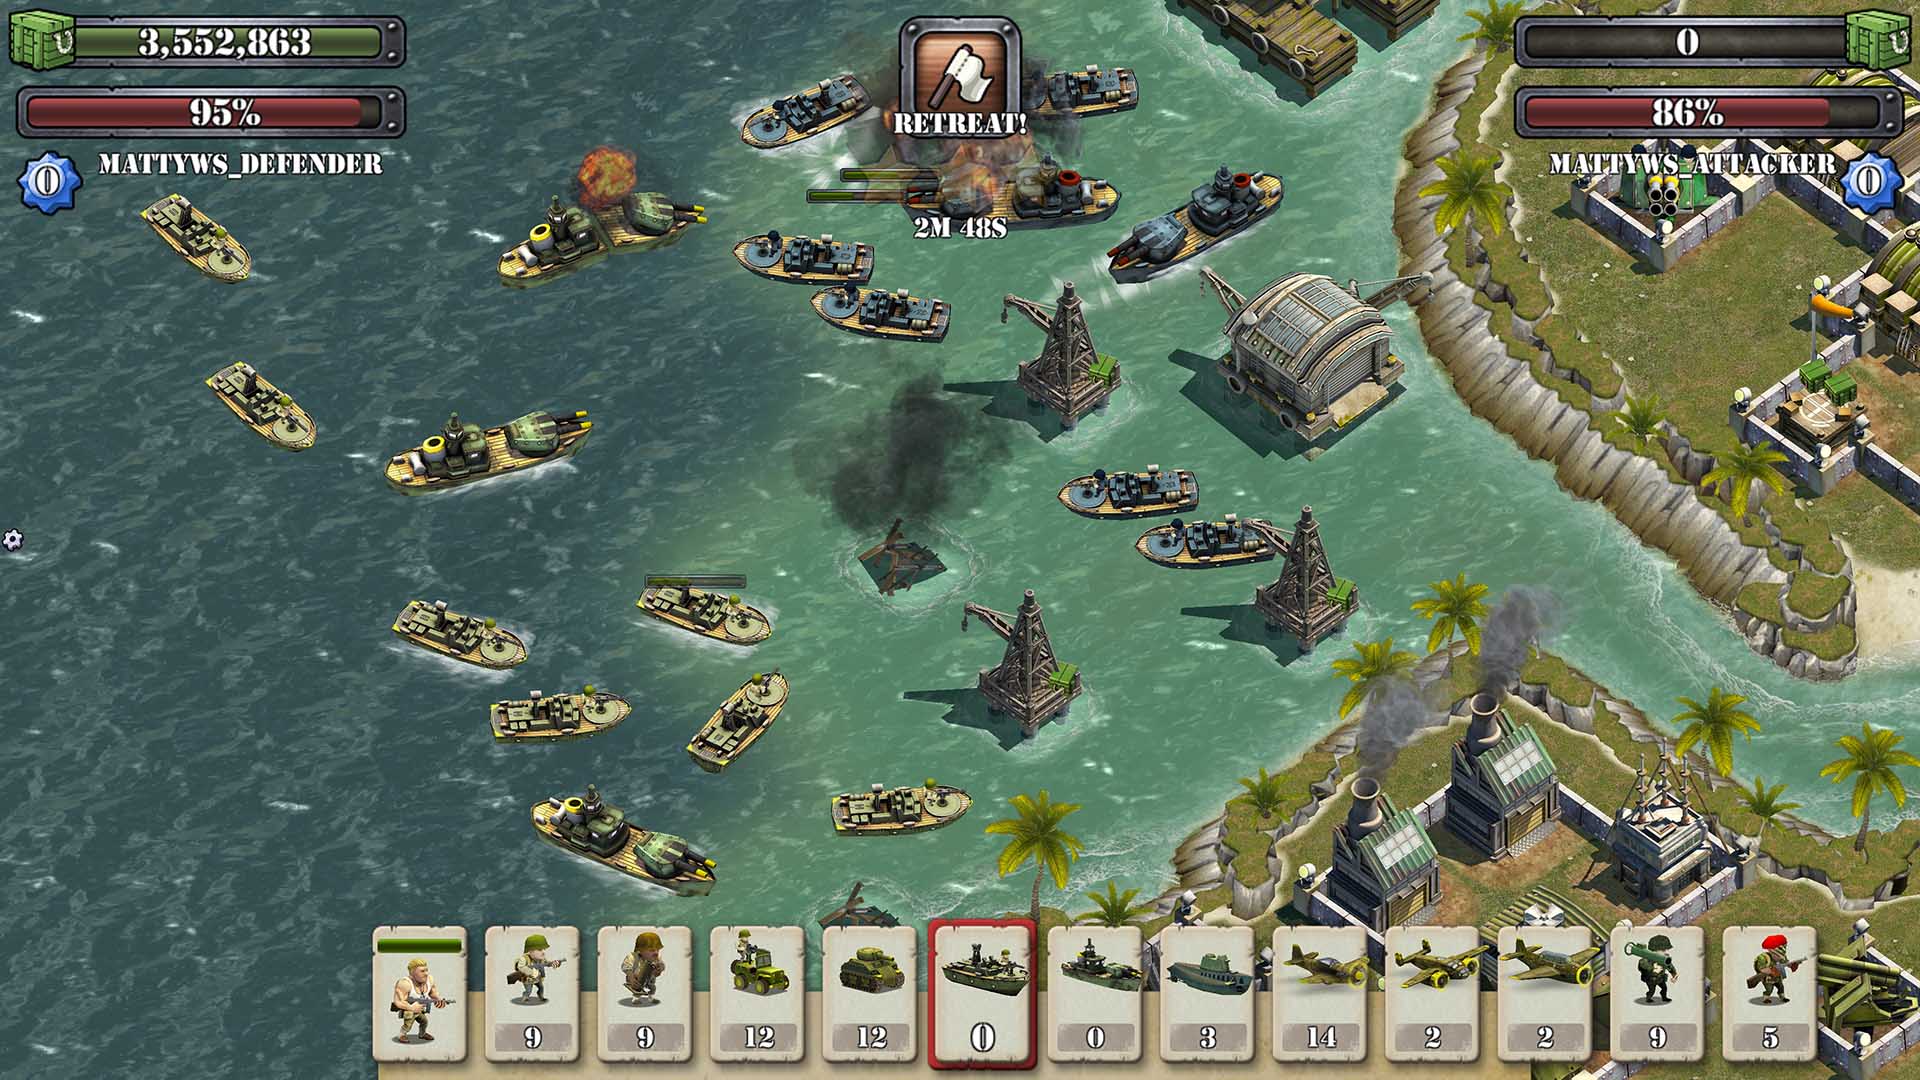 Island похожие игры. Игра Battle Islands. Battle Islands: Commanders игра. Игра битва островов 2. Битва за острова похожие игры.